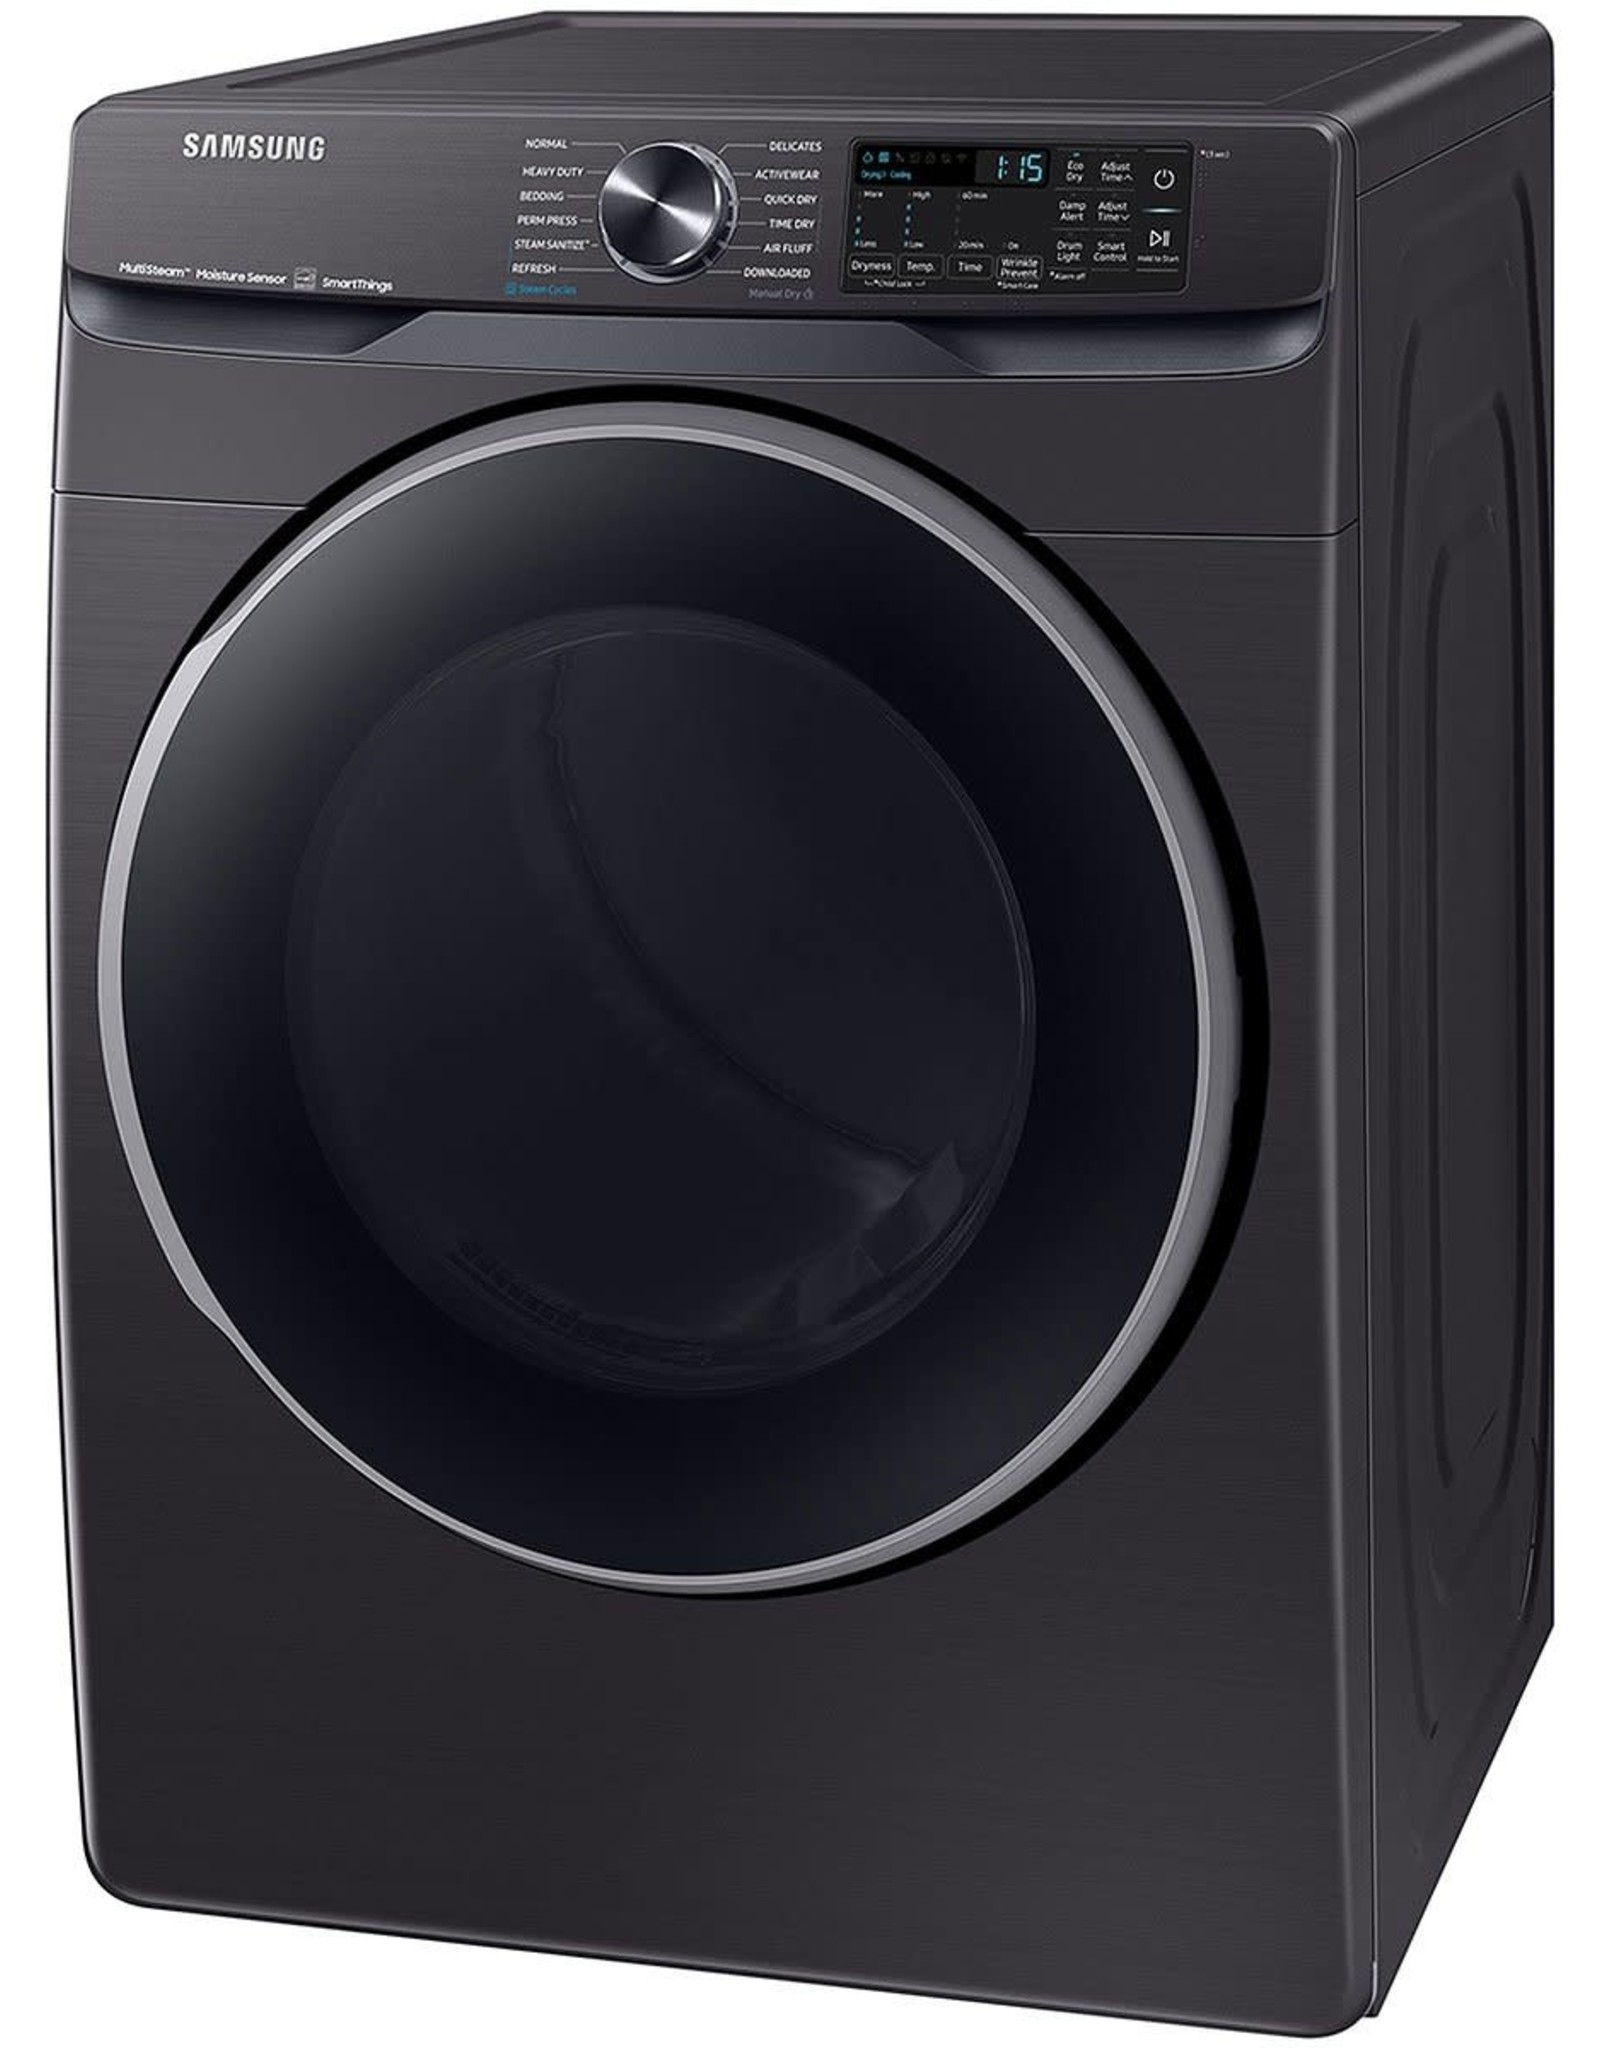 SAMSUNG ( DVE50A8500V 7.5 cu. ft. Smart Brushed Black Electric Dryer with Steam Sanitize